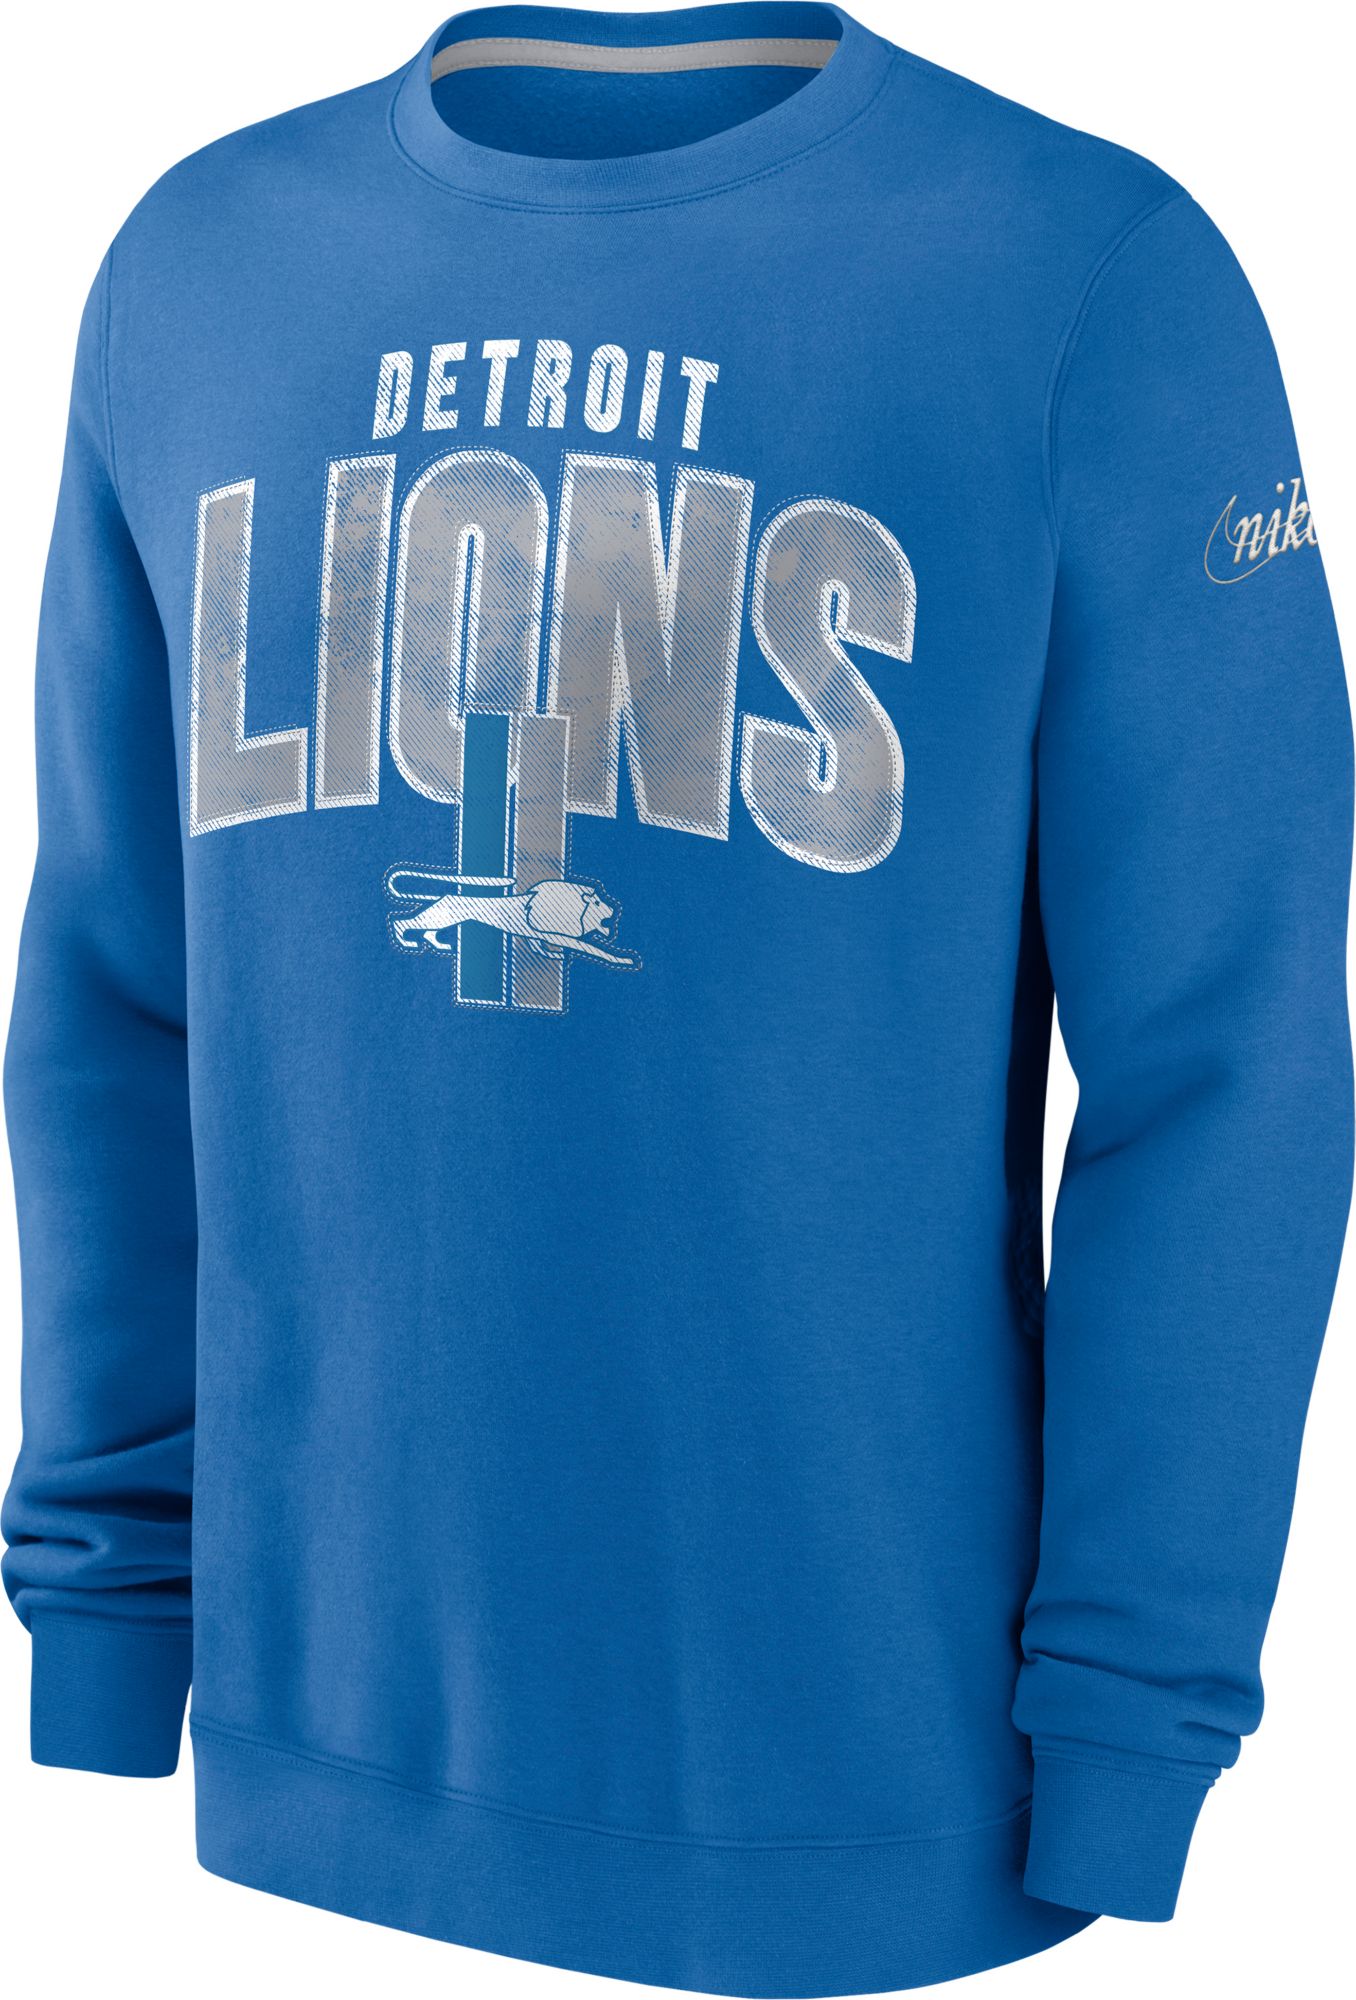 Detroit Lions clothing